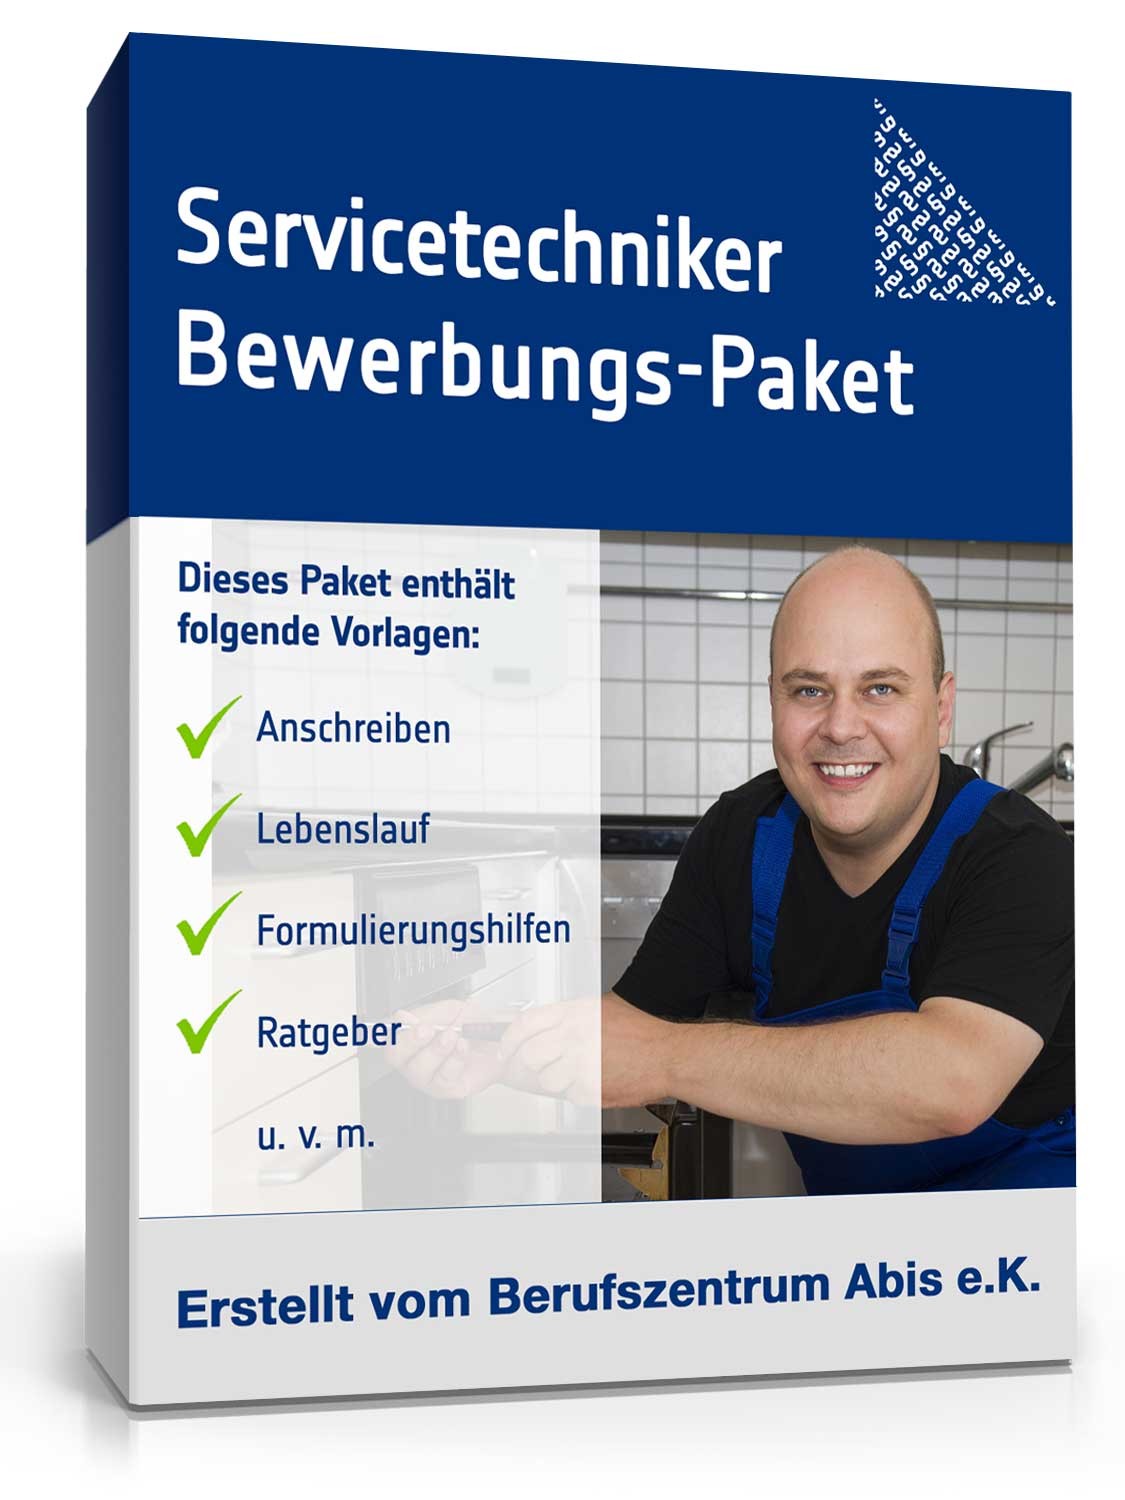 Hauptbild des Produkts: Bewerbungs-Paket Servicetechniker 